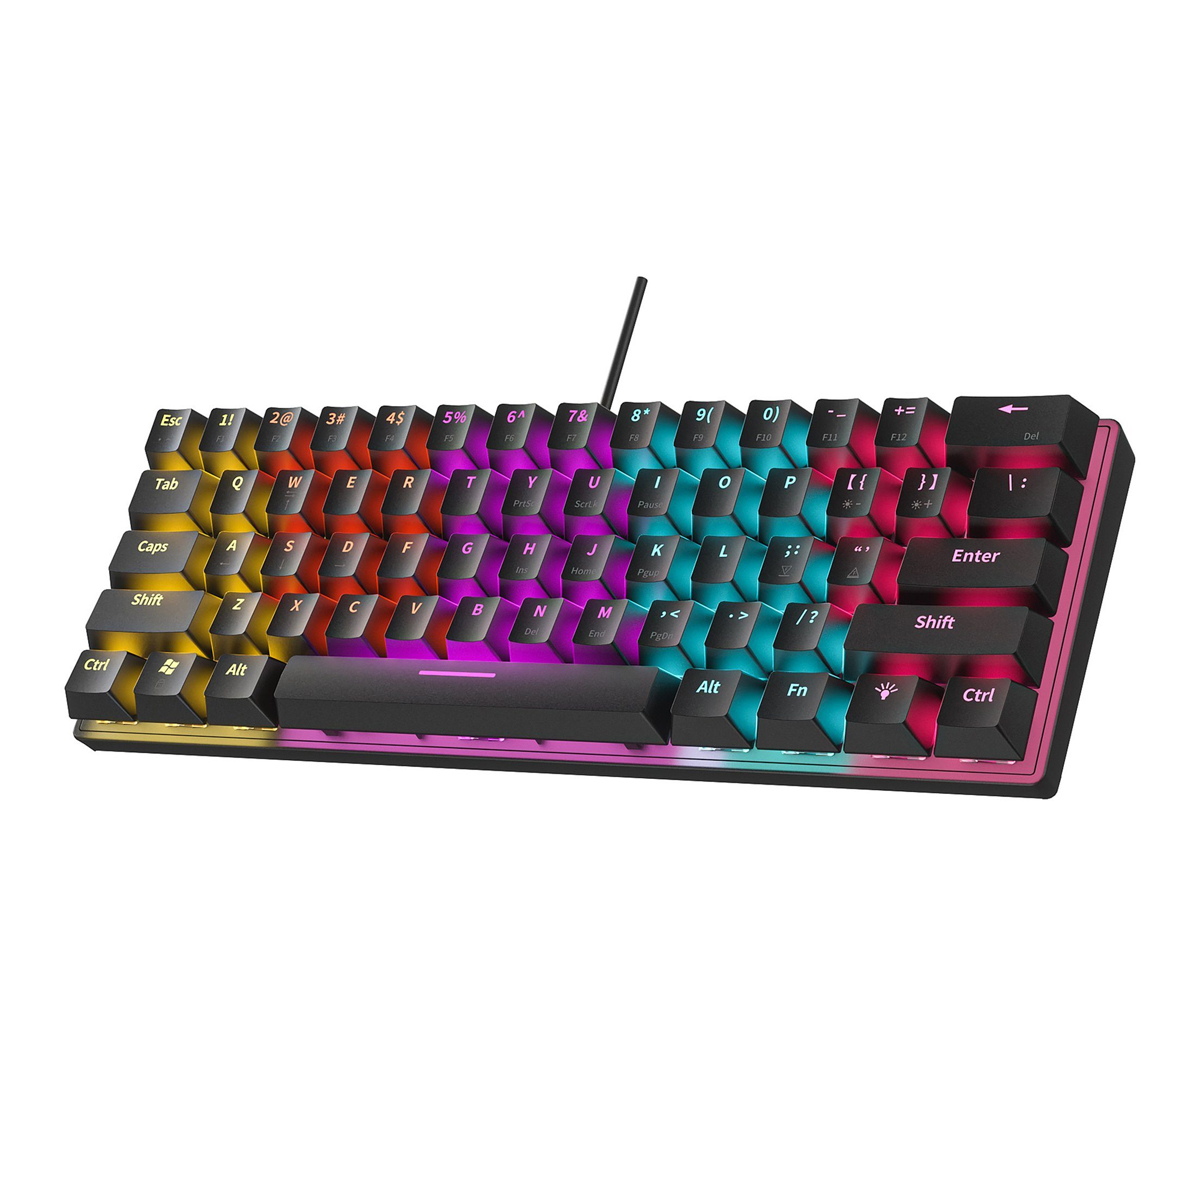 Tastatur Mini-Tastatur,Mechanische Tastaturen,61 Tastatur Lichteffekte (Tragbar, Tasten,12 KINSI kompakt),